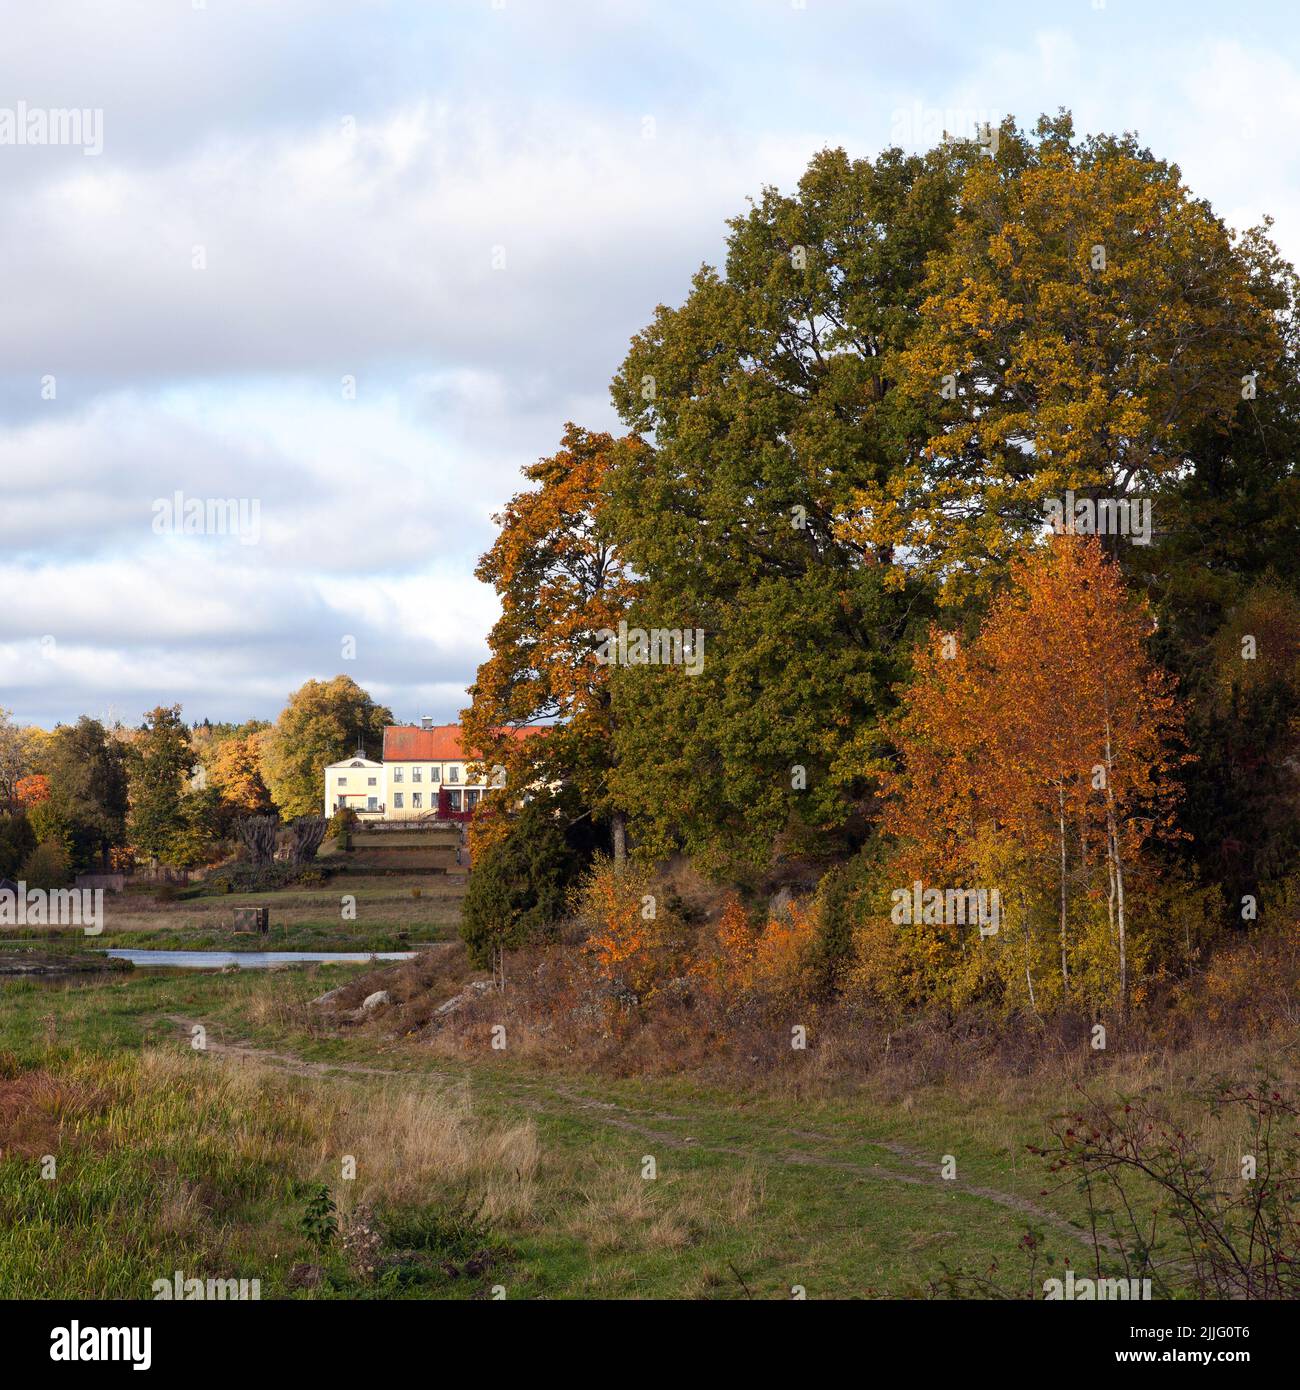 ROSLAGEN, SUÈDE, LE 10 OCTOBRE 2016. Vue du matin, arbres colorés, un domaine en arrière-plan. Garez-vous sur la gauche. Utilisation éditoriale Banque D'Images